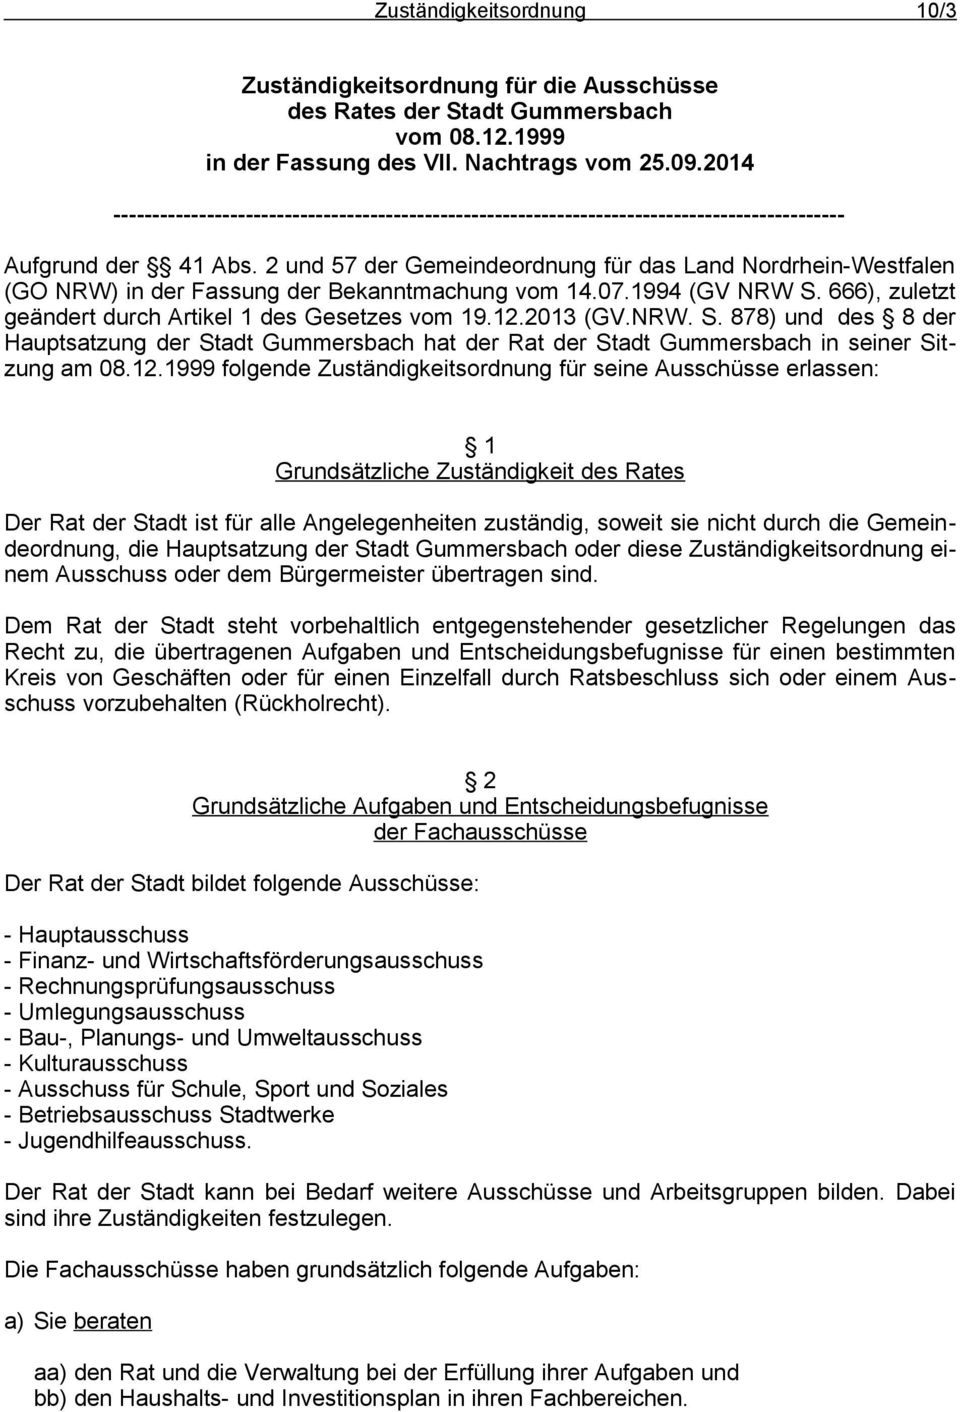 2 und 57 der Gemeindeordnung für das Land Nordrhein-Westfalen (GO NRW) in der Fassung der Bekanntmachung vom 14.07.1994 (GV NRW S. 666), zuletzt geändert durch Artikel 1 des Gesetzes vom 19.12.